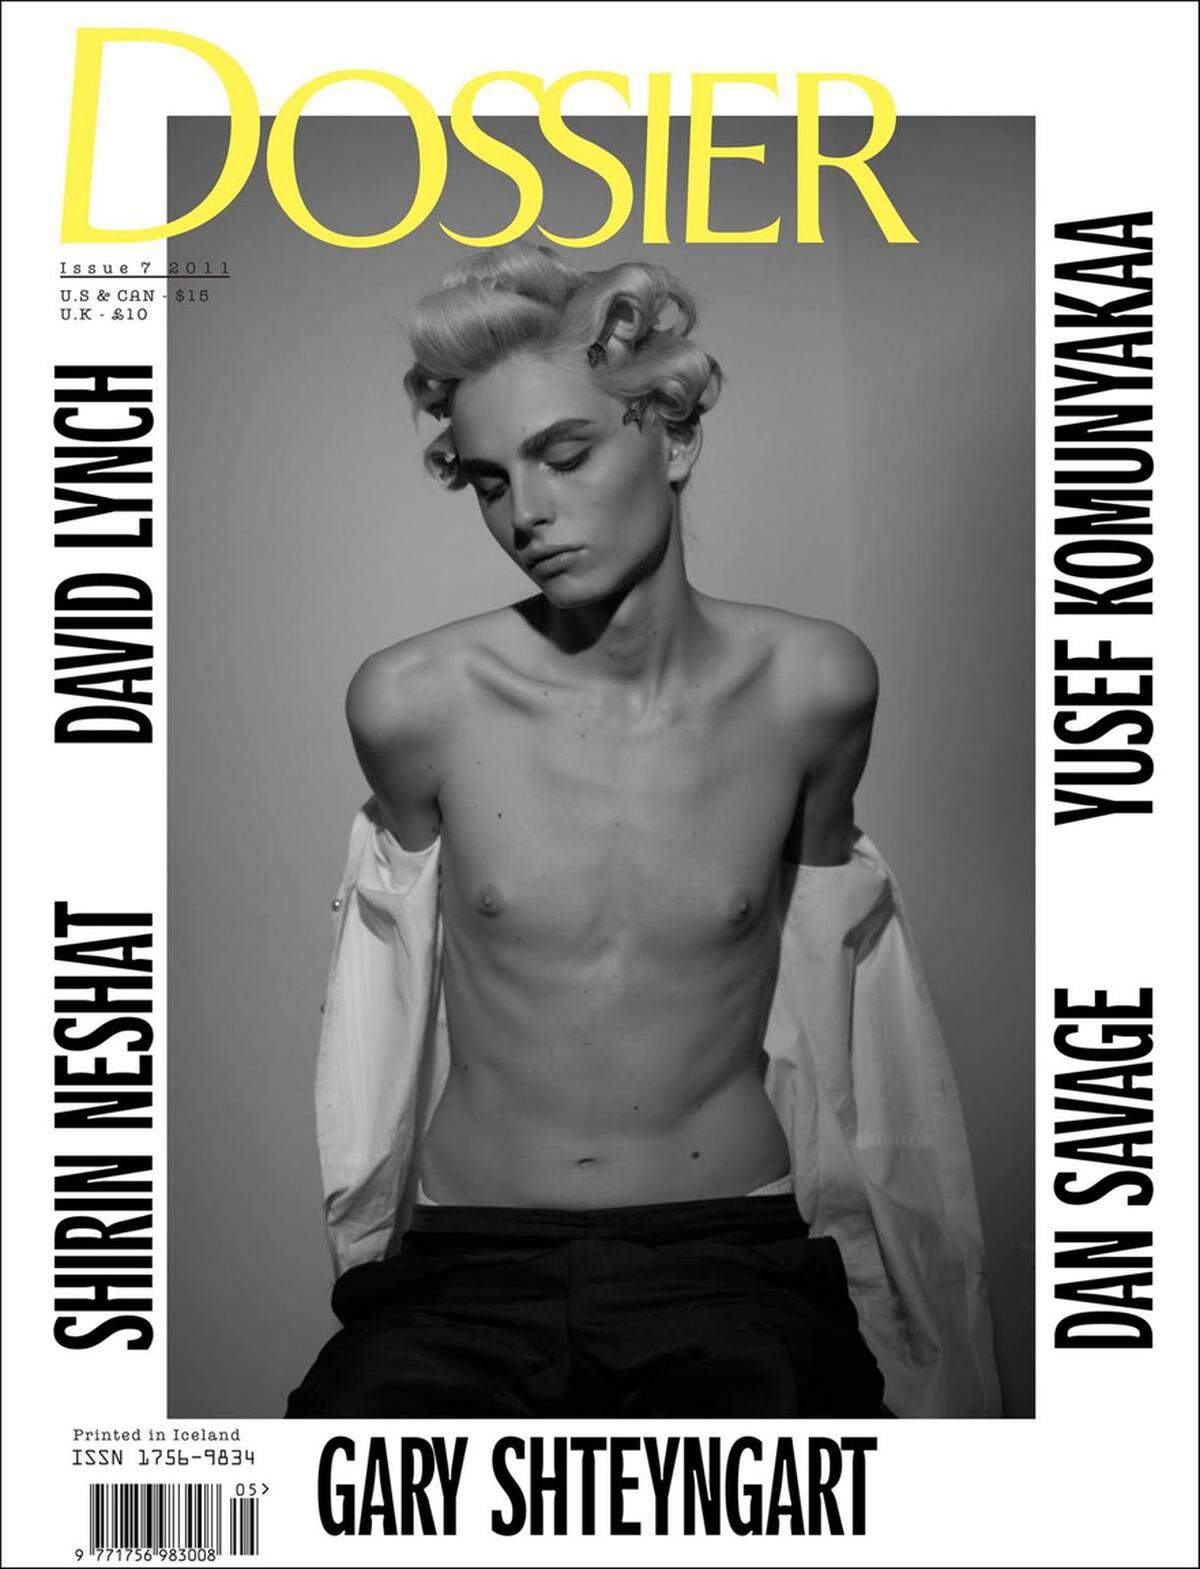 Männermodel Andrej Pejic modelt auf Grund seines androgynen Aussehens sowohl als Frau als auch als Mann. Das Cover des Dossier-Magazins erregte 2011 die Gemüter und wurde bei den Buchhandlungen Barnes &amp; Noble sowie Borders zensiert.